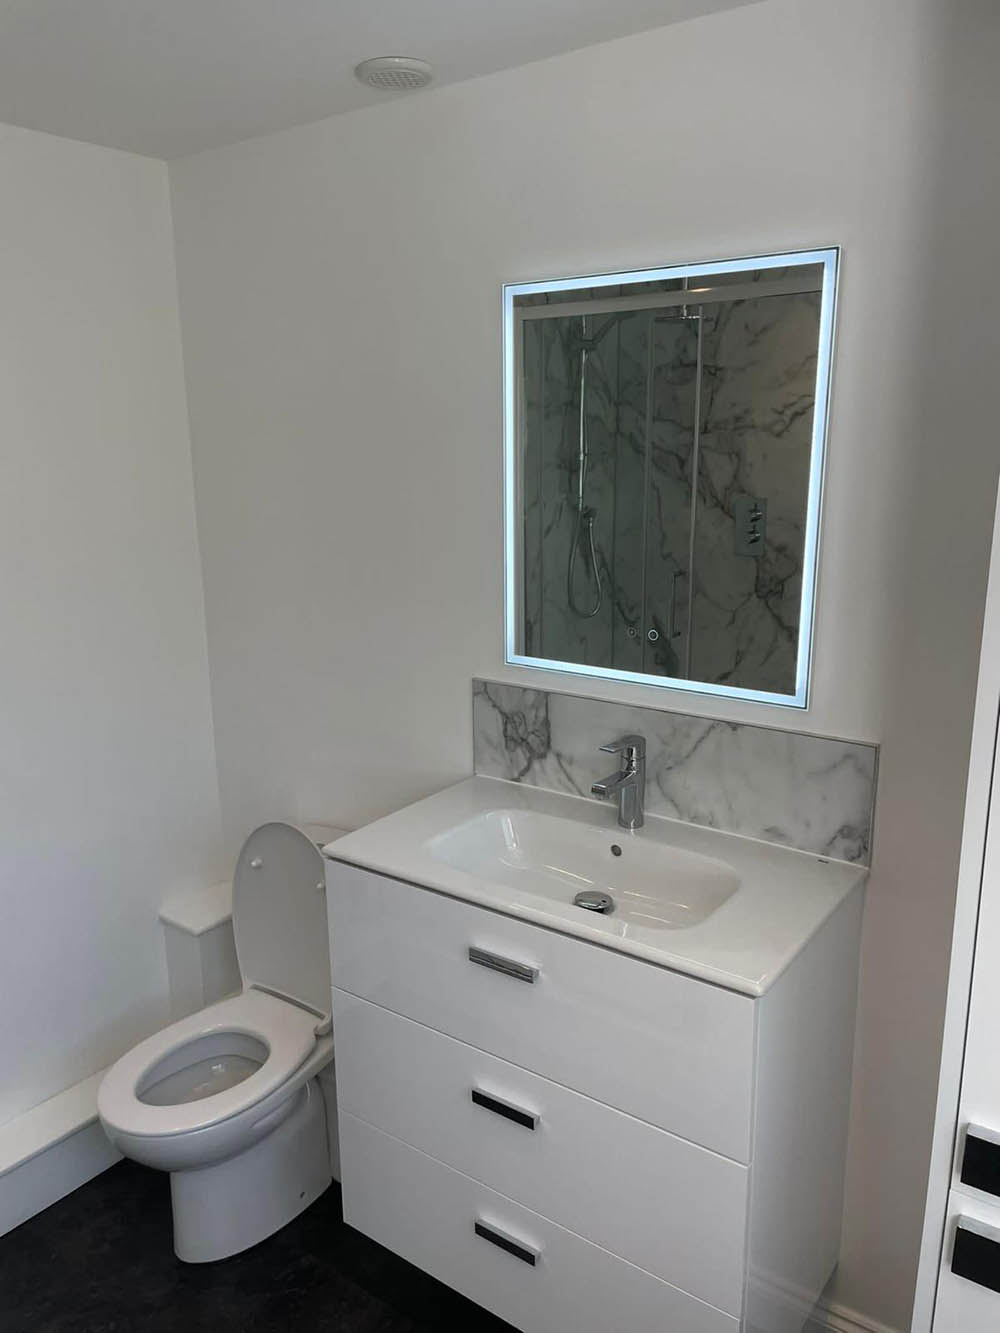 LED mirror in a bathroom